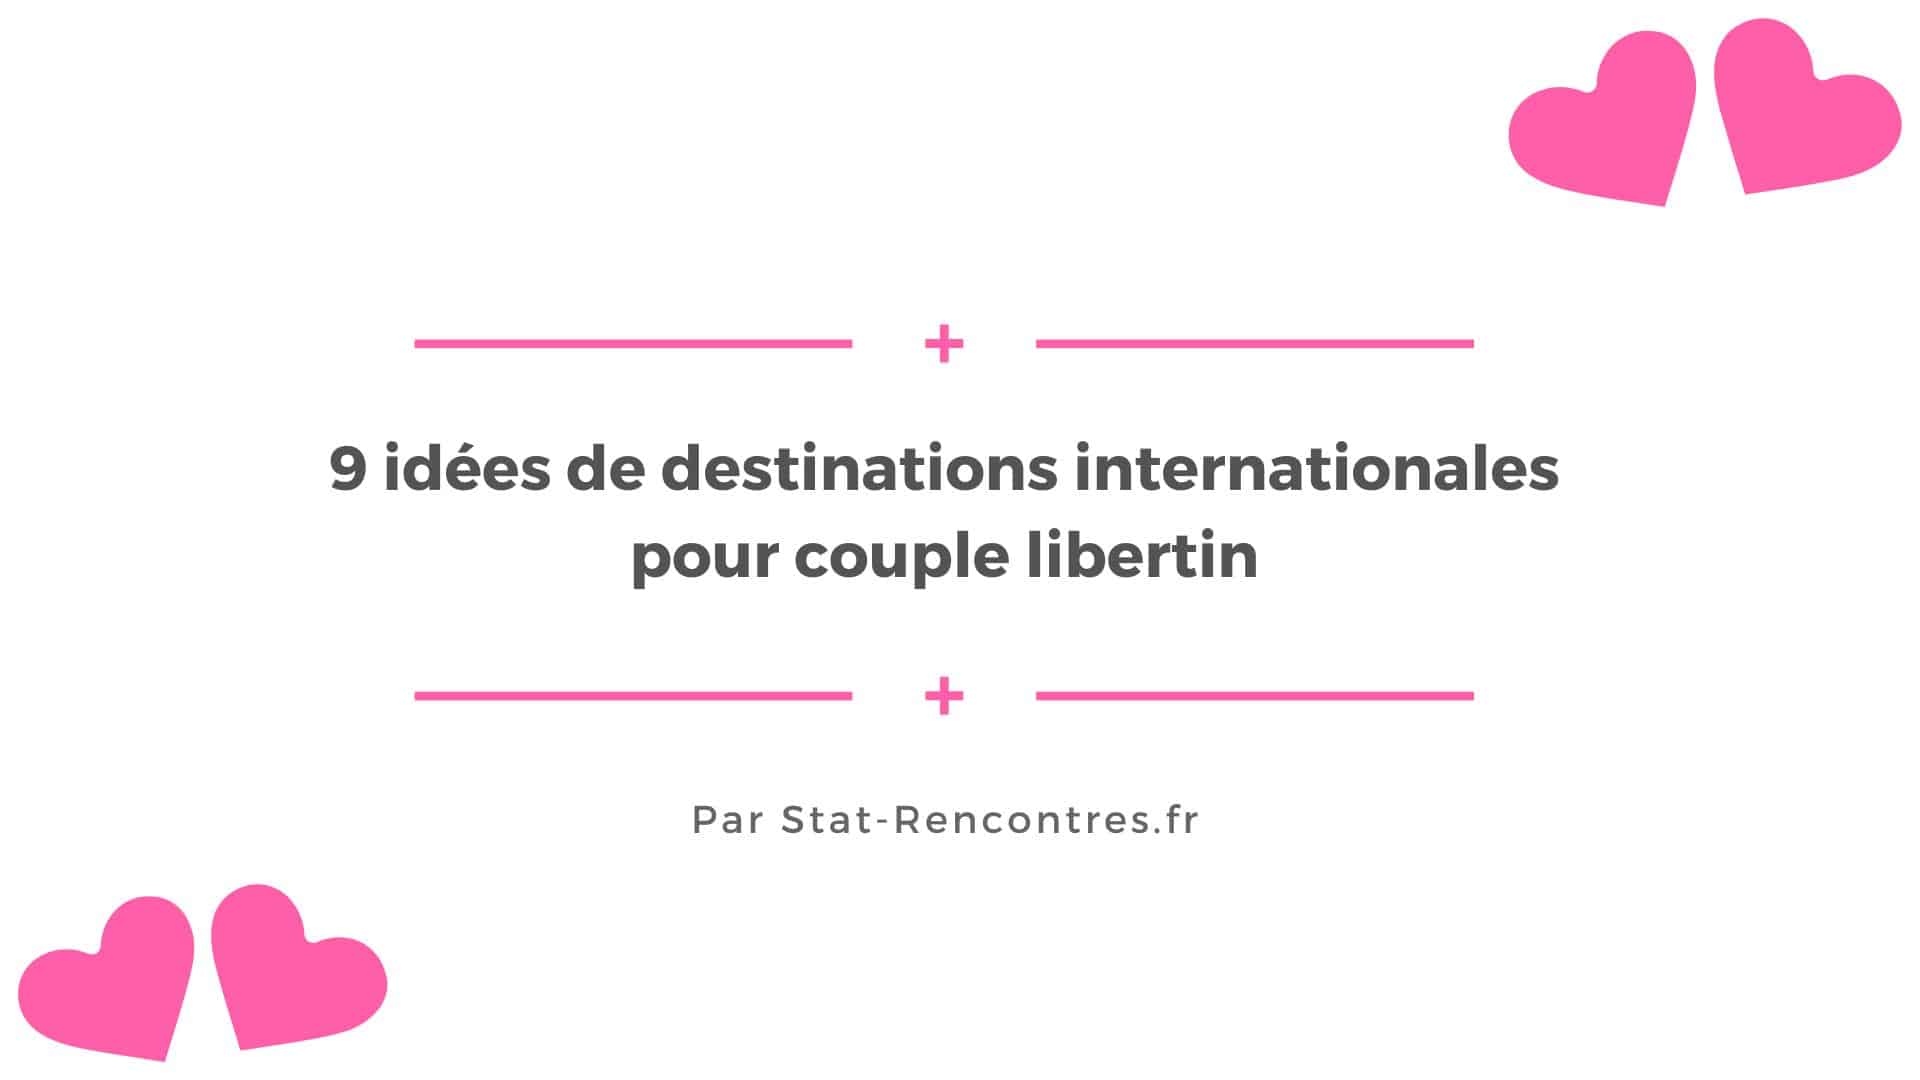 9 idées de destinations internationales pour couple libertin